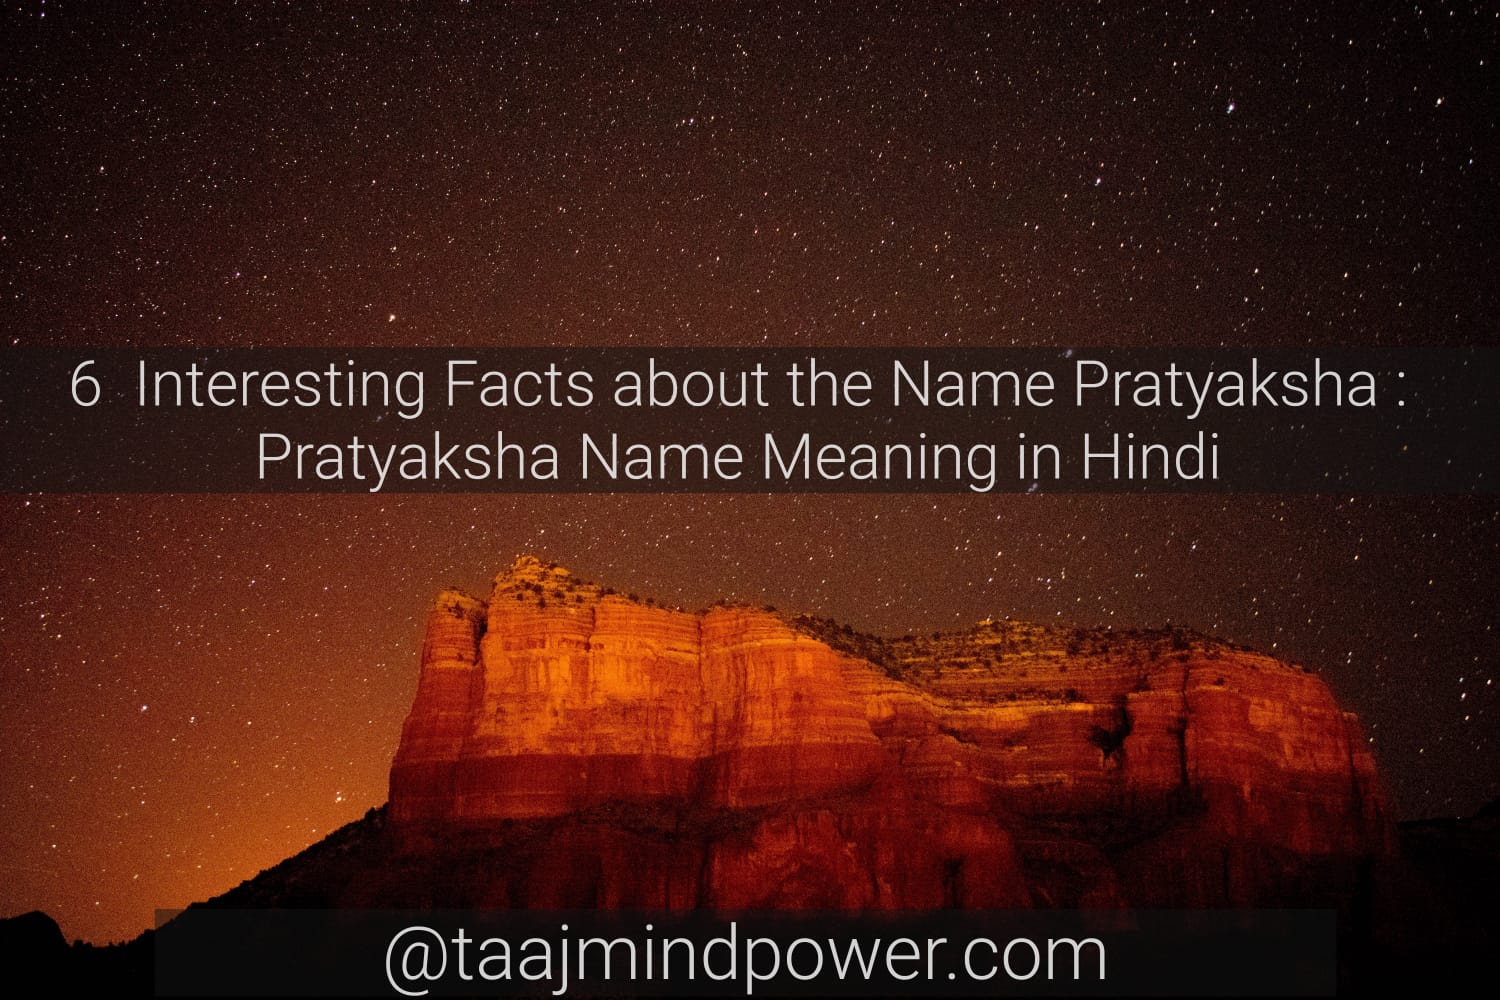 Pratyaksha Name Meaning in Hindi